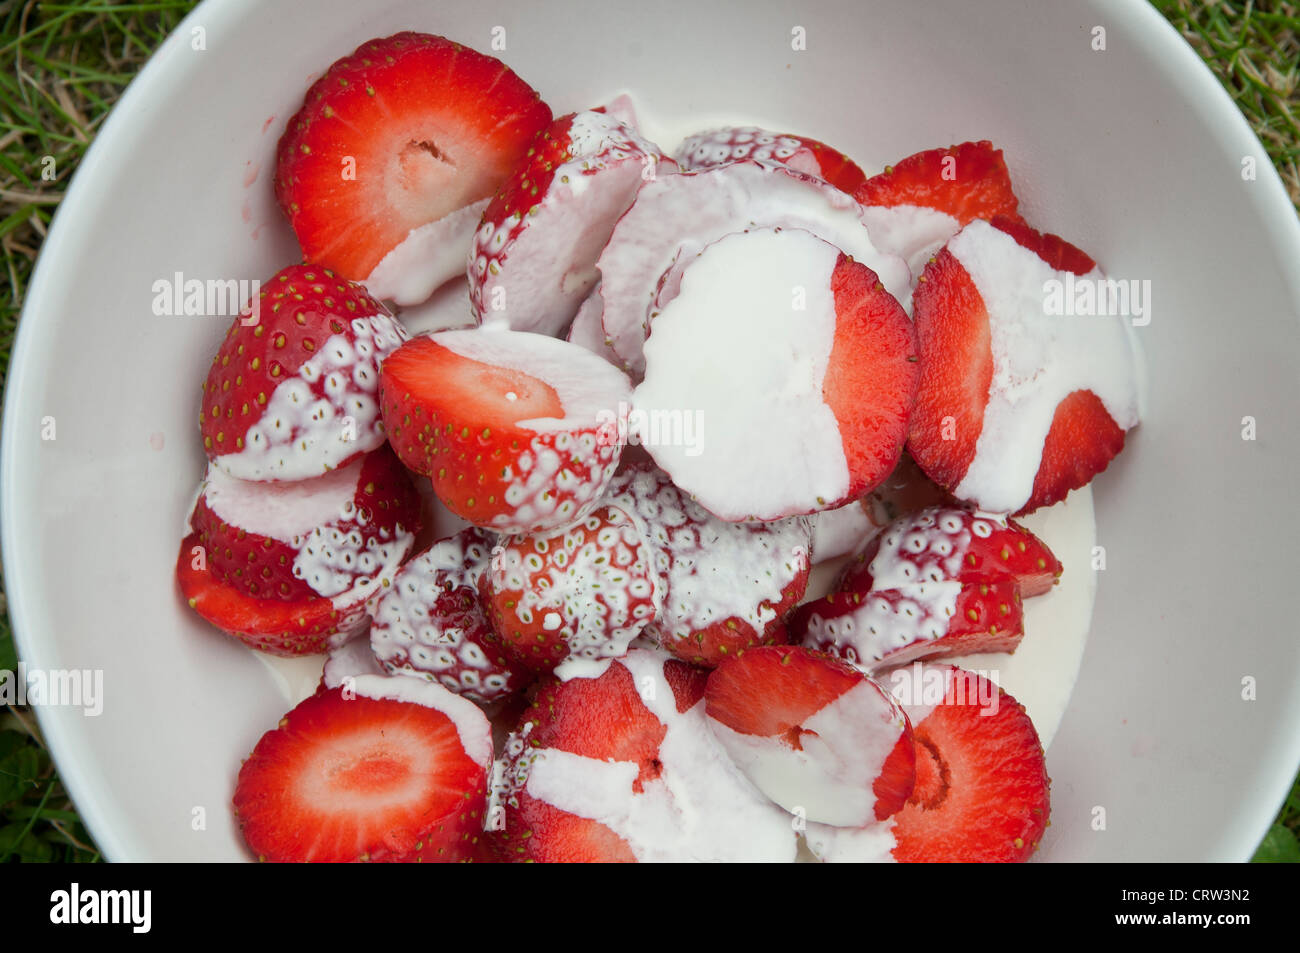 Strawberries (Fragaria × ananassa) and cream Stock Photo